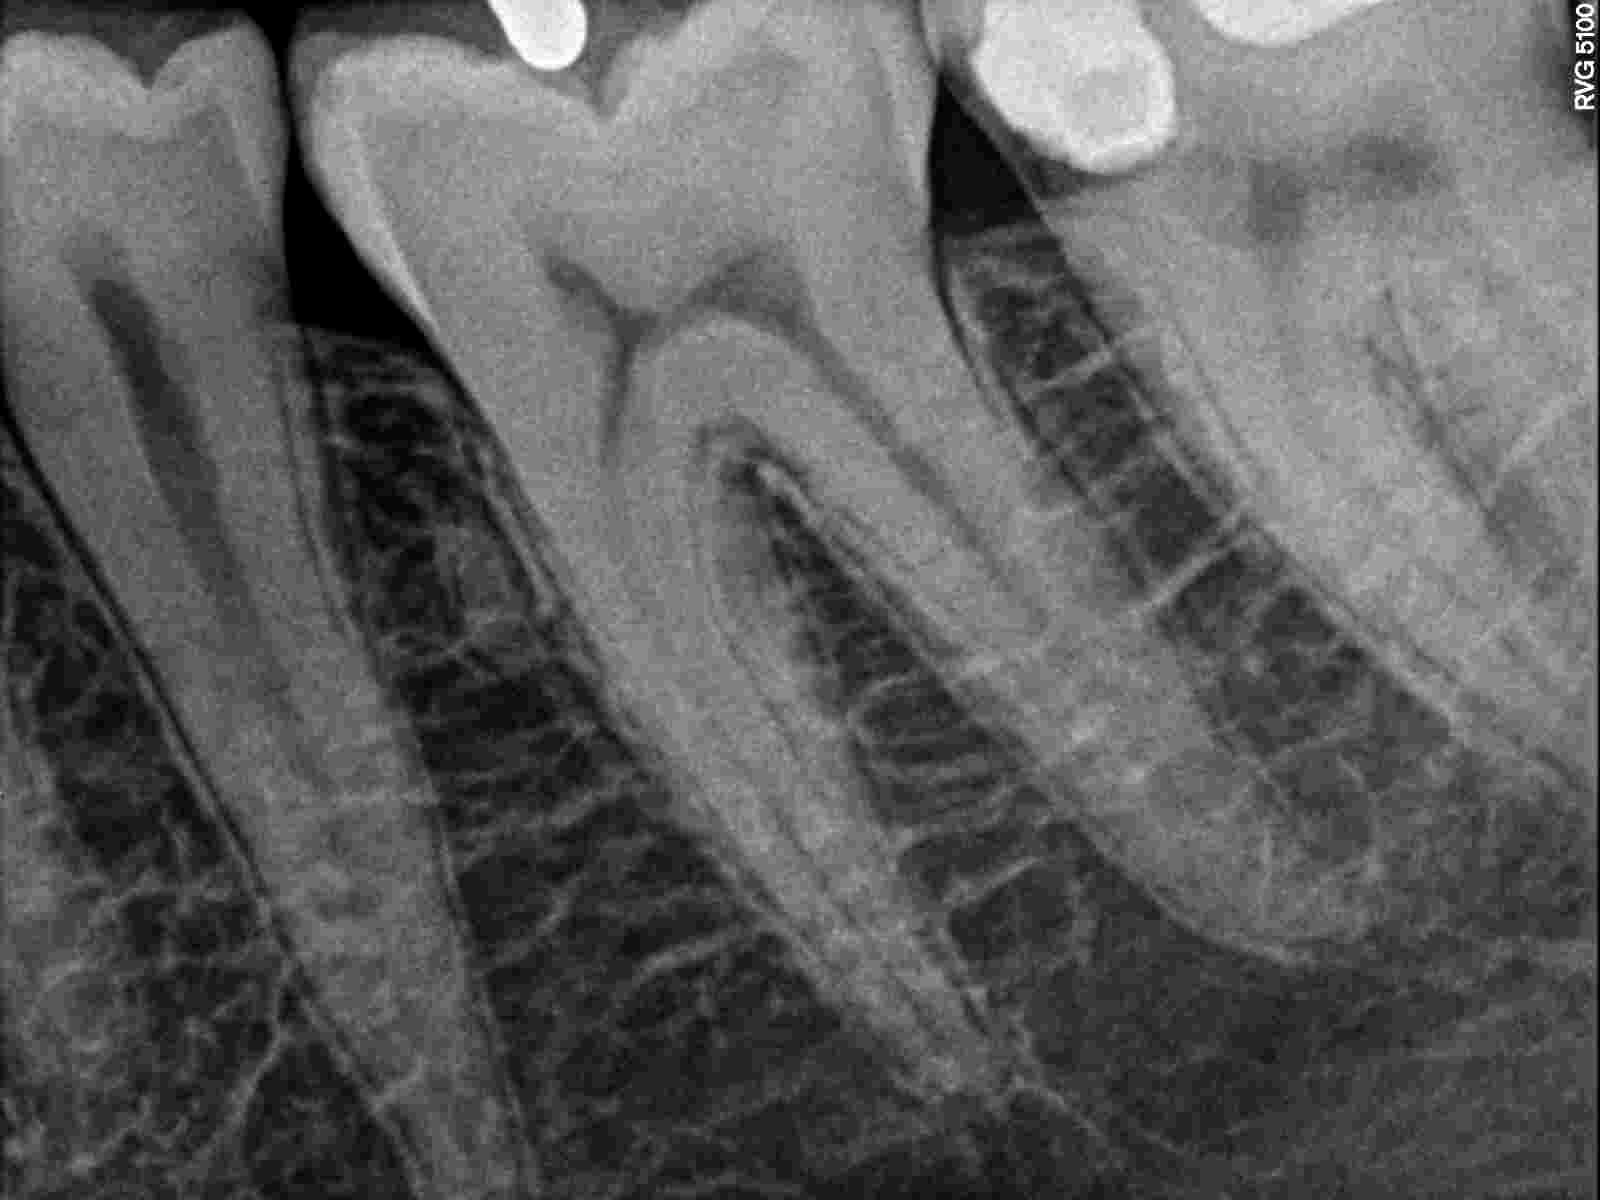 È normale che ci sia ancora l'ascesso visto che il dente è stato aperto 2gg fa?